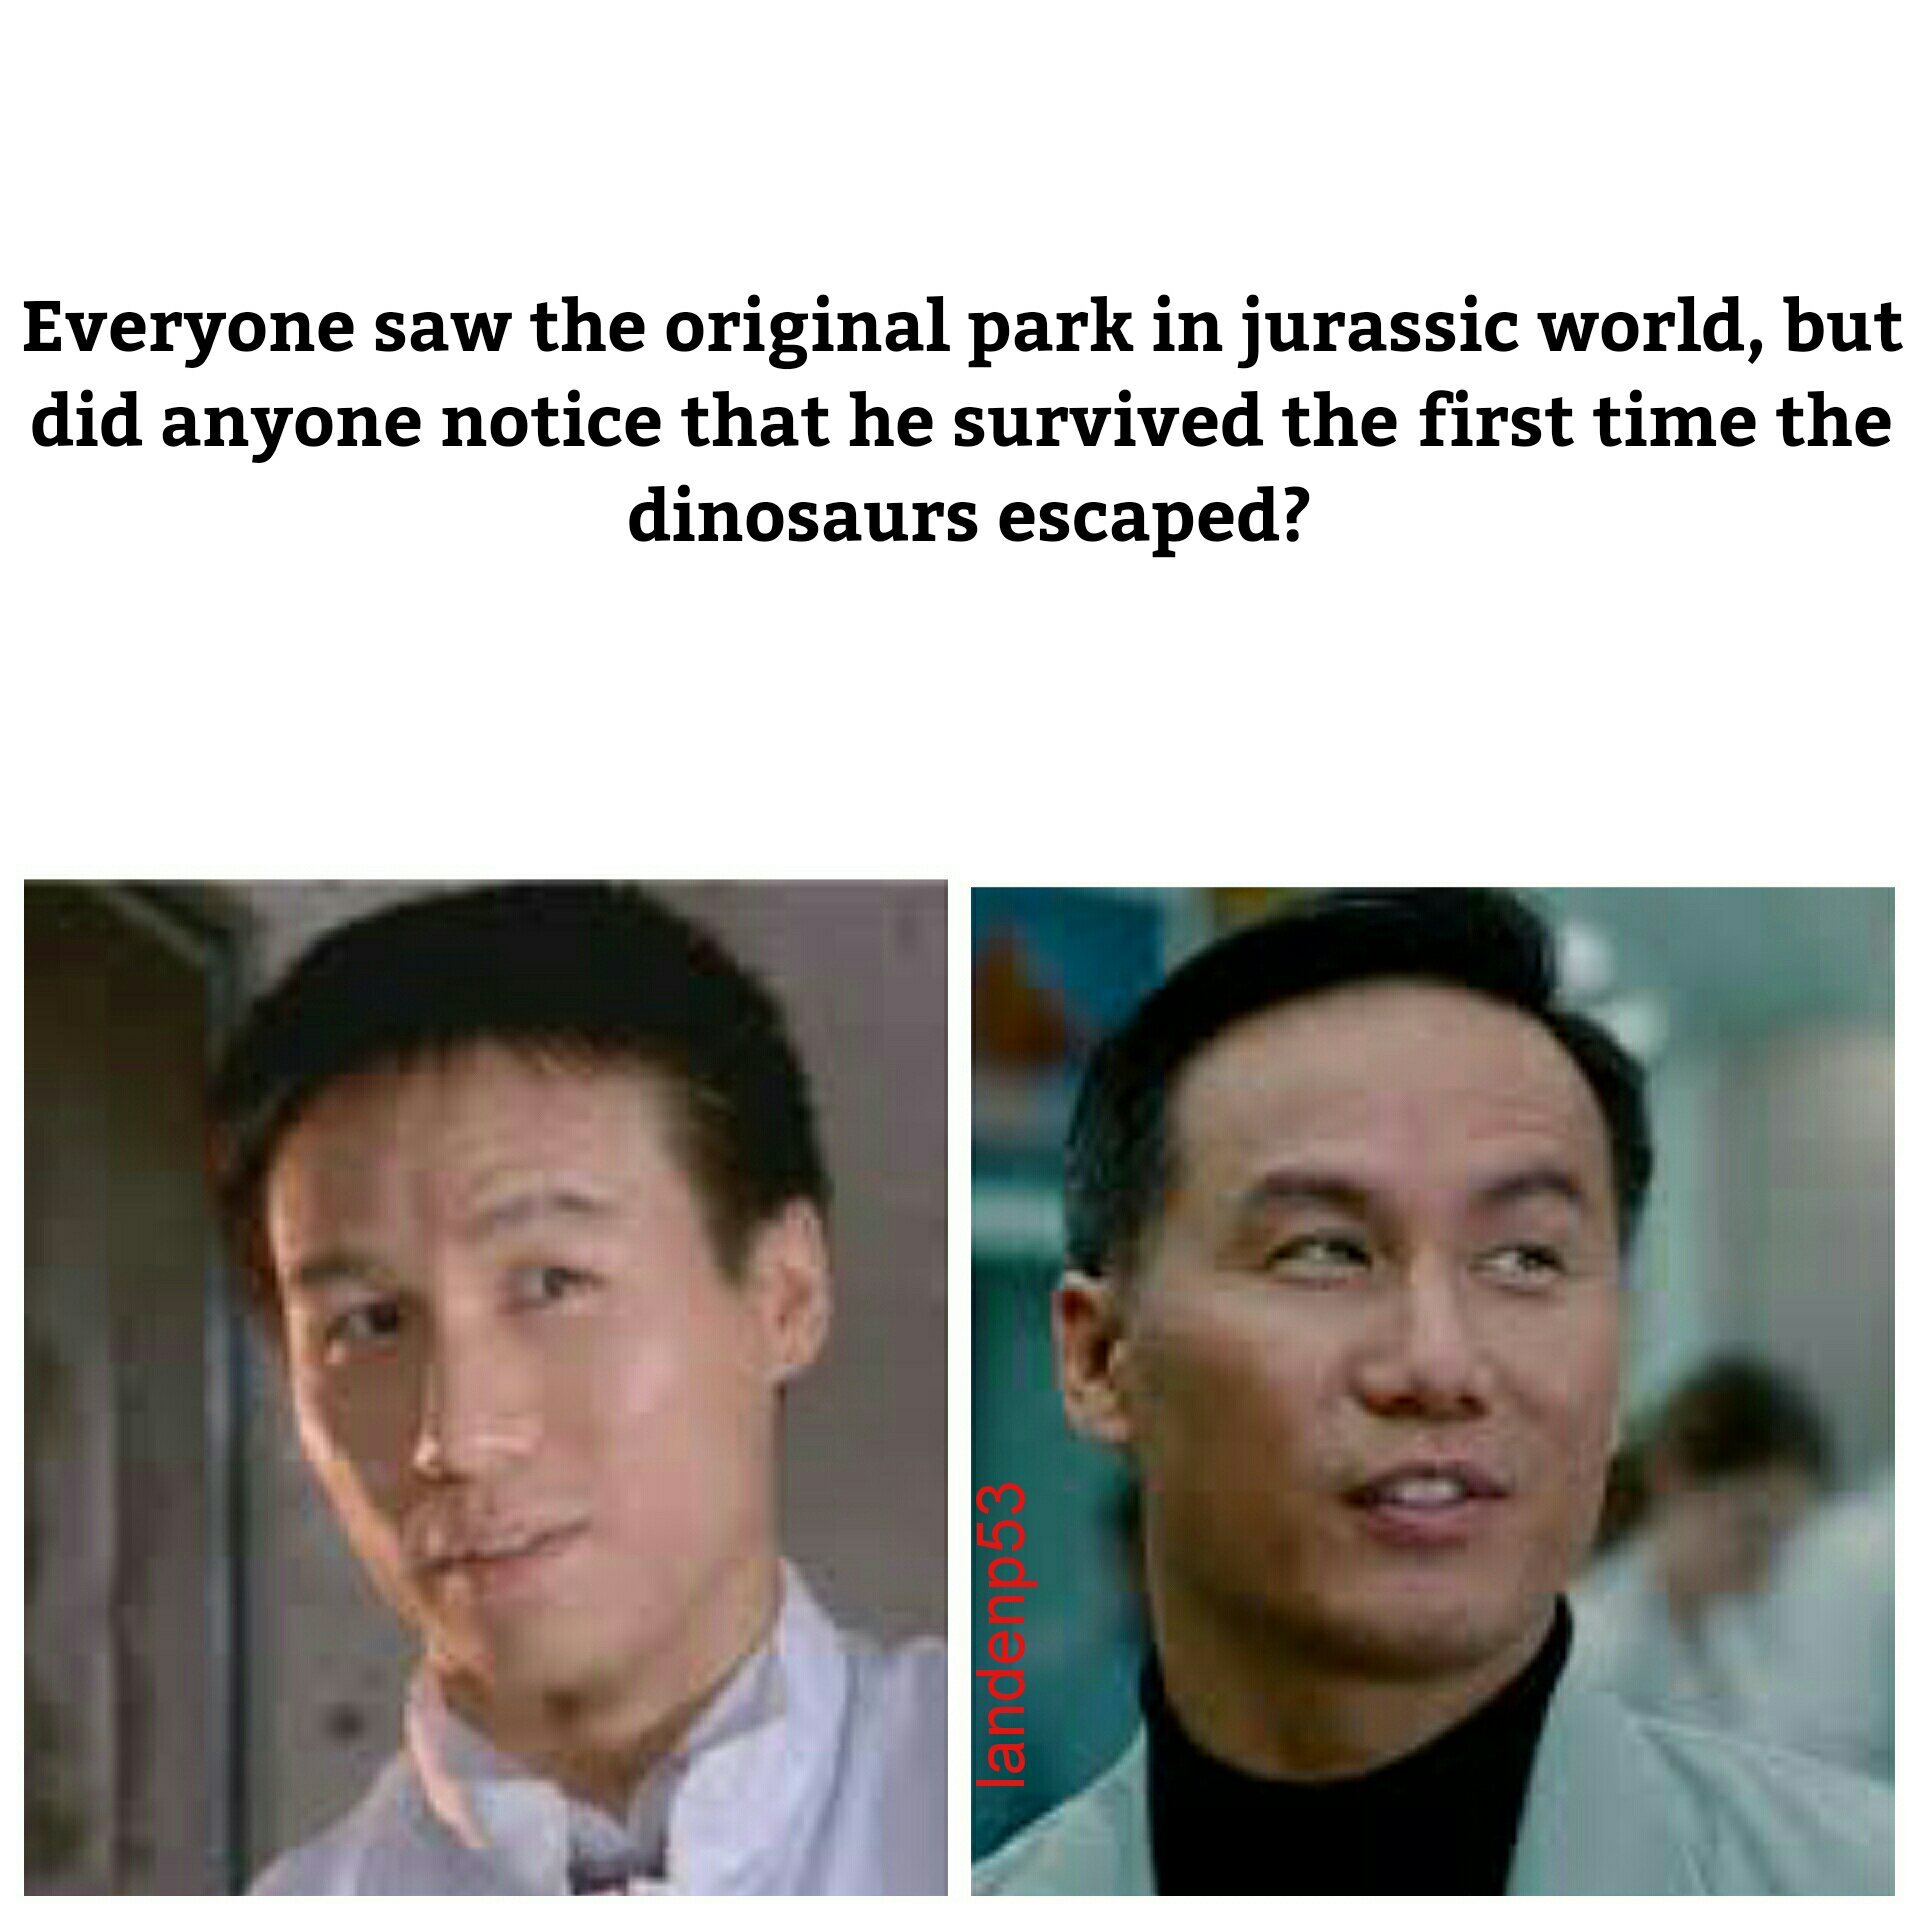 Jurassic world - meme